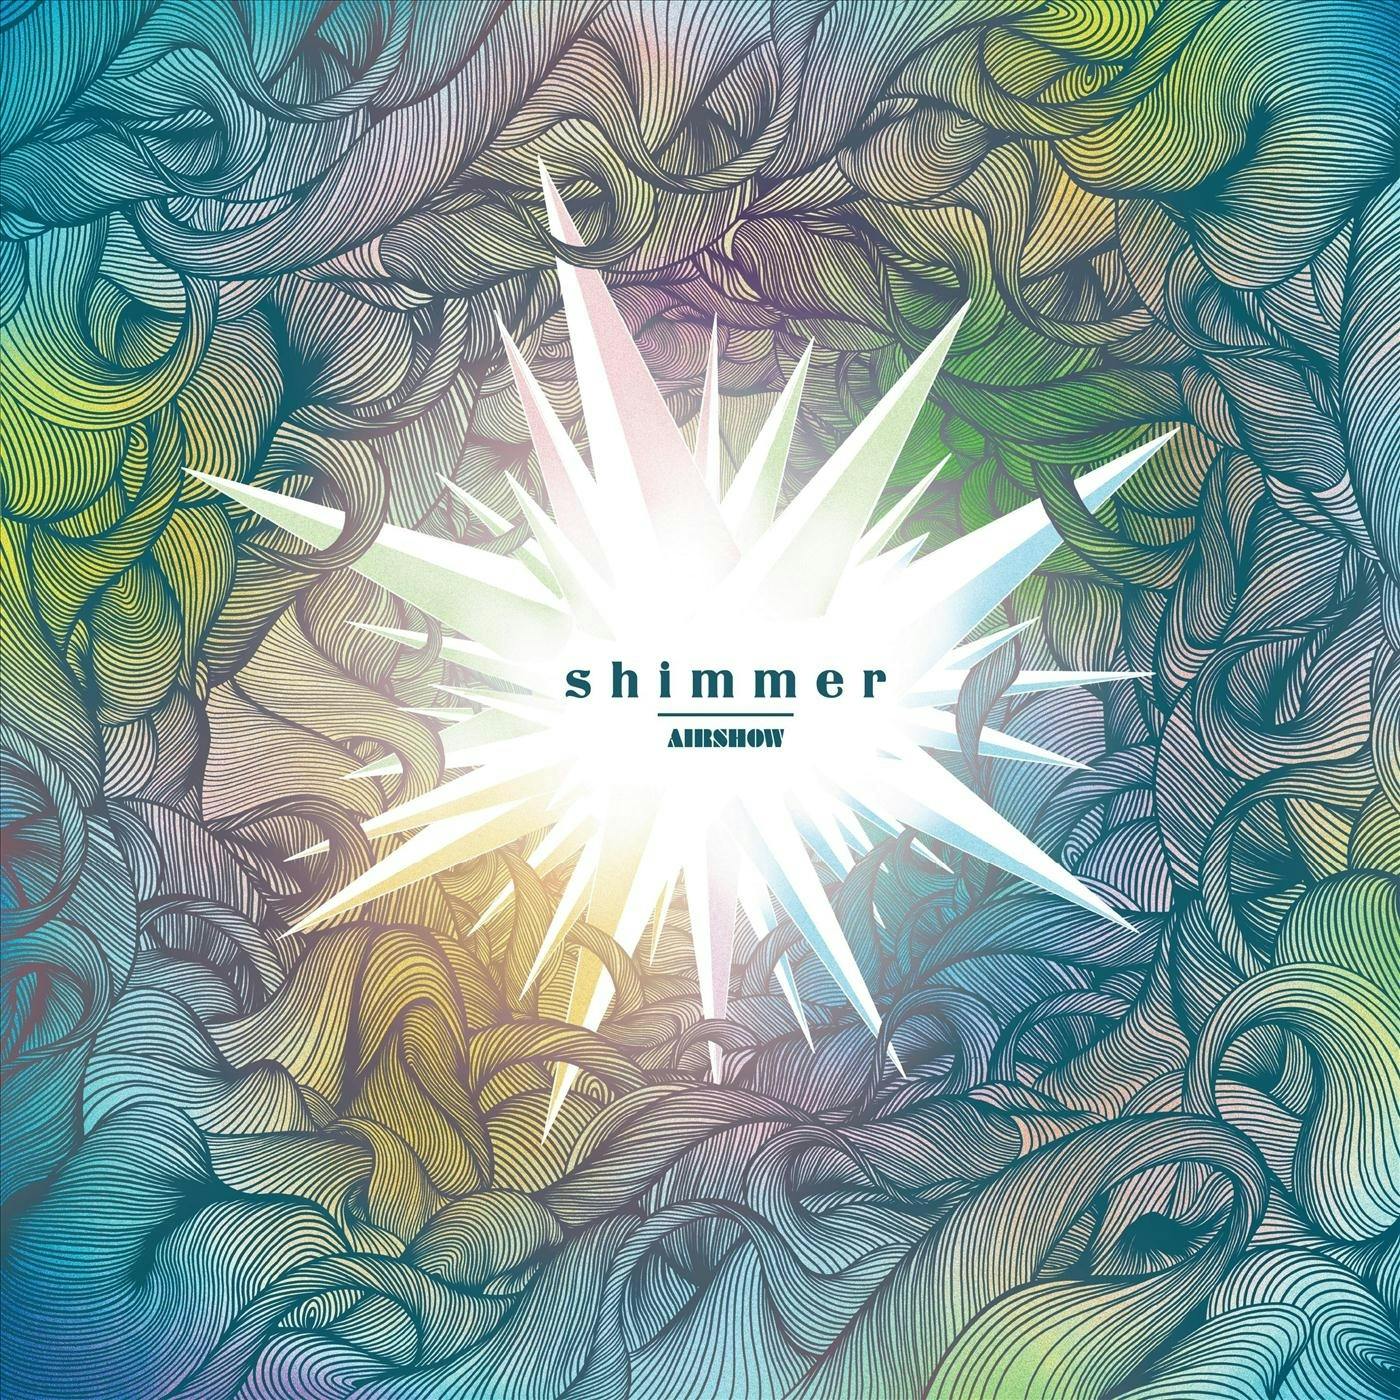 Shimmer album cover